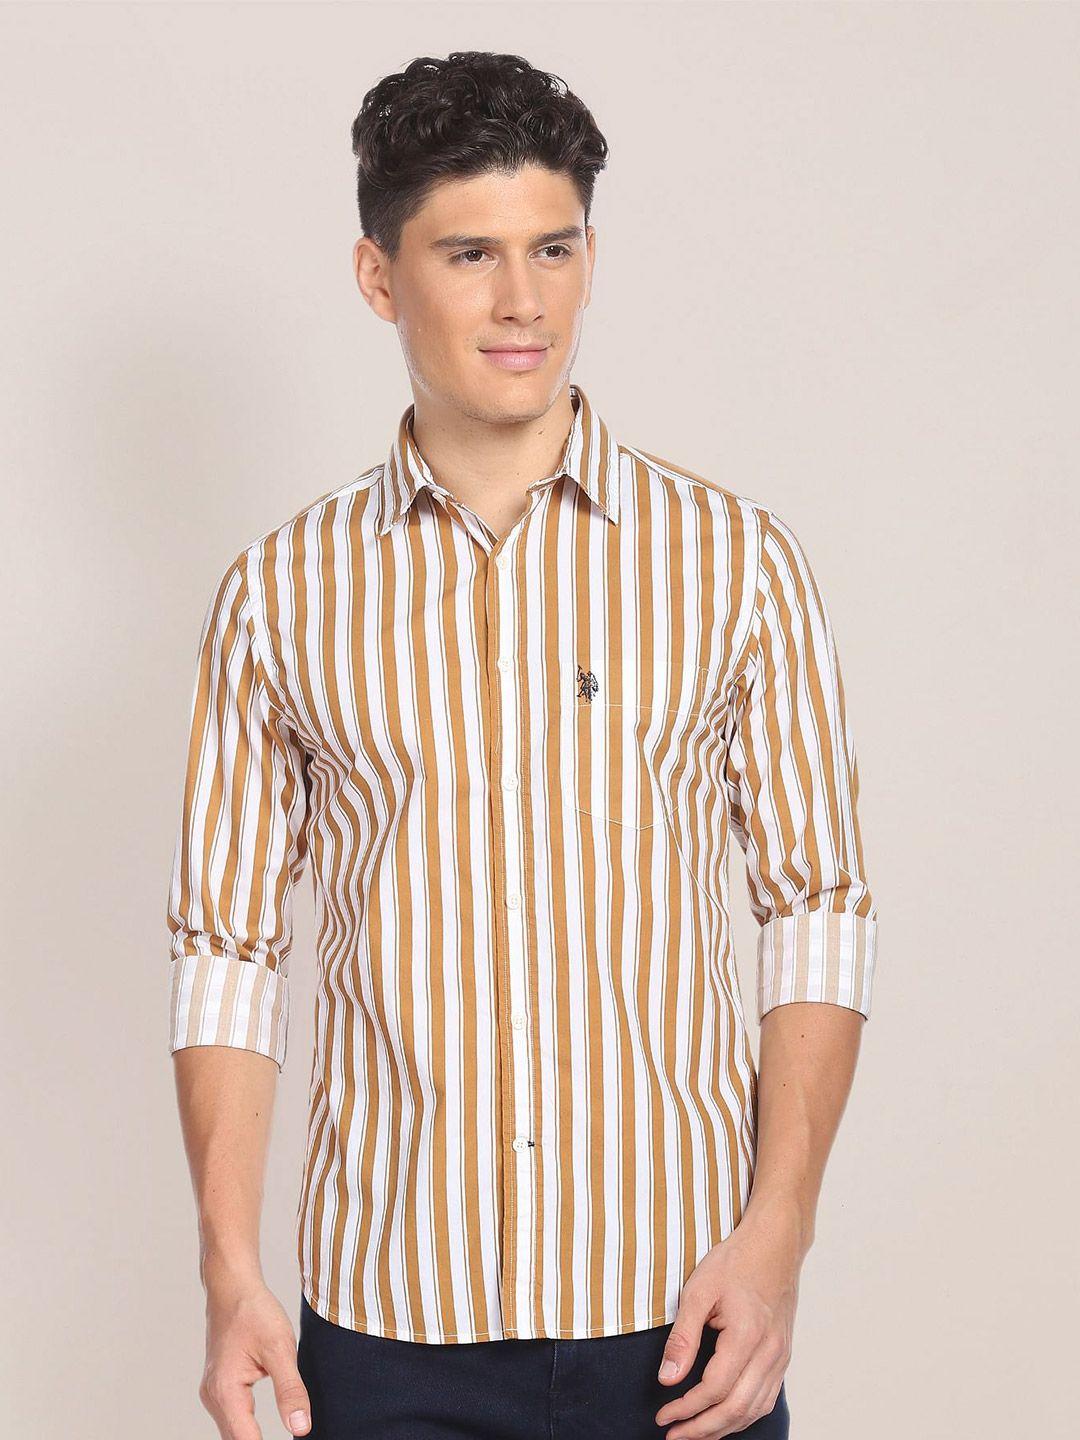 u.s. polo assn. vertical striped spread collar pure cotton casual shirt